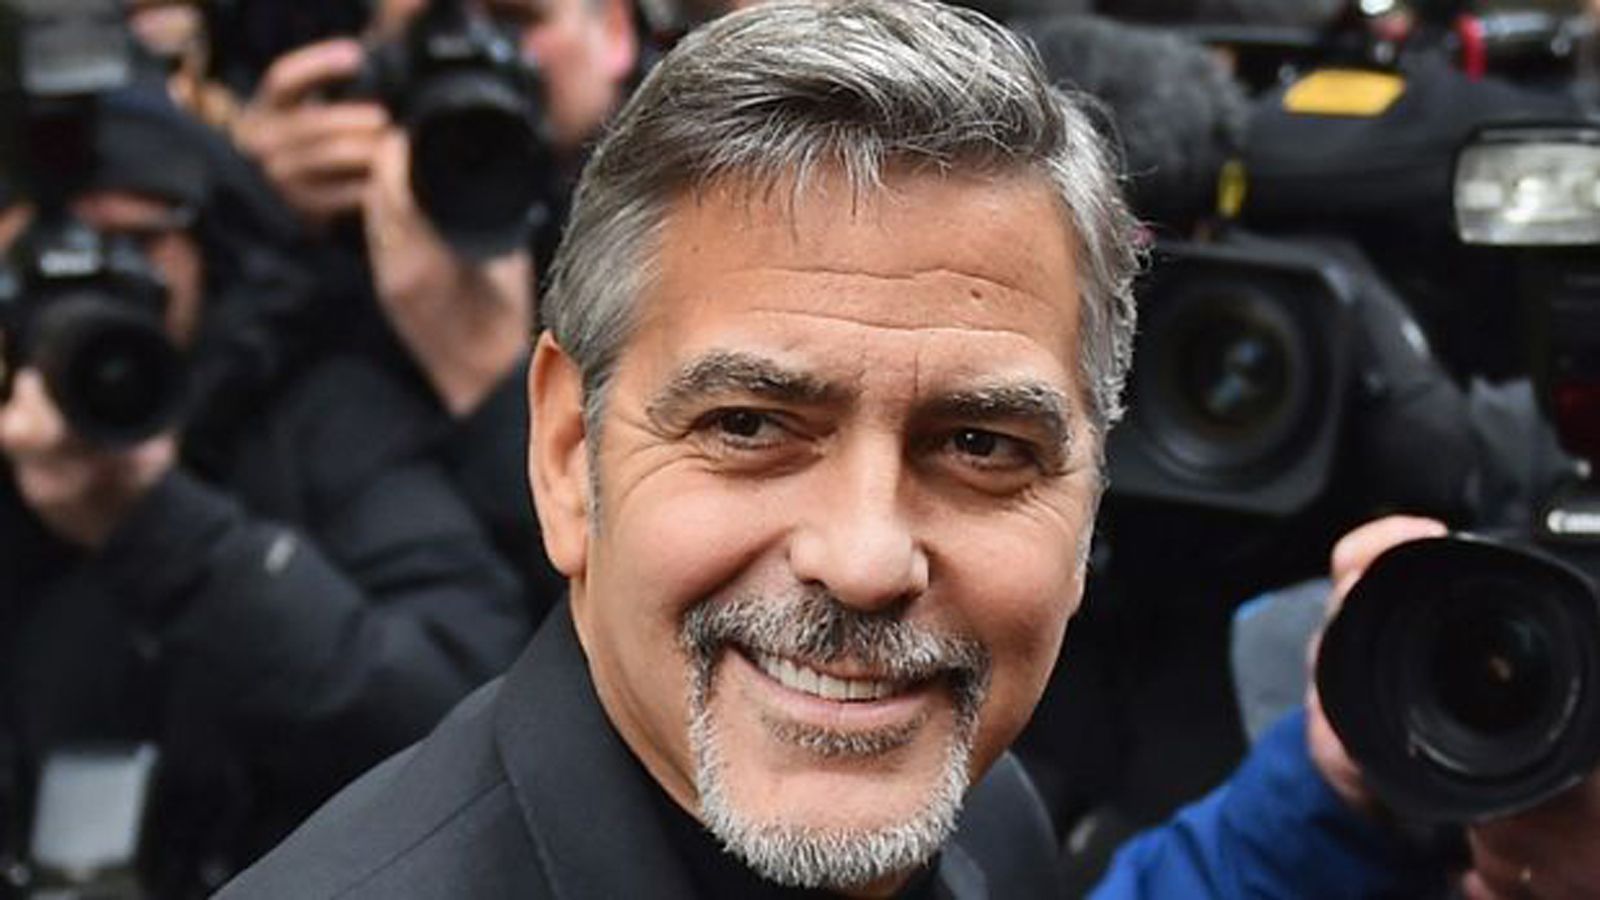 
                <strong>George Clooney (Cincinnati Bengals)</strong><br>
                Einer der bekanntesten Schauspieler der Welt ist einer der wenigen prominenten Fans der Cincinnati Bengals. Bei den Oscar-Verleihungen 2013 bekannte er sich öffentlich zu den Bengals. Auf dem Roten Teppich traf er den damaligen Star-Safety der Ravens, Ed Reed, dem er sagte: "Ed, du hast mir als Bengals-Fan weh getan."
              